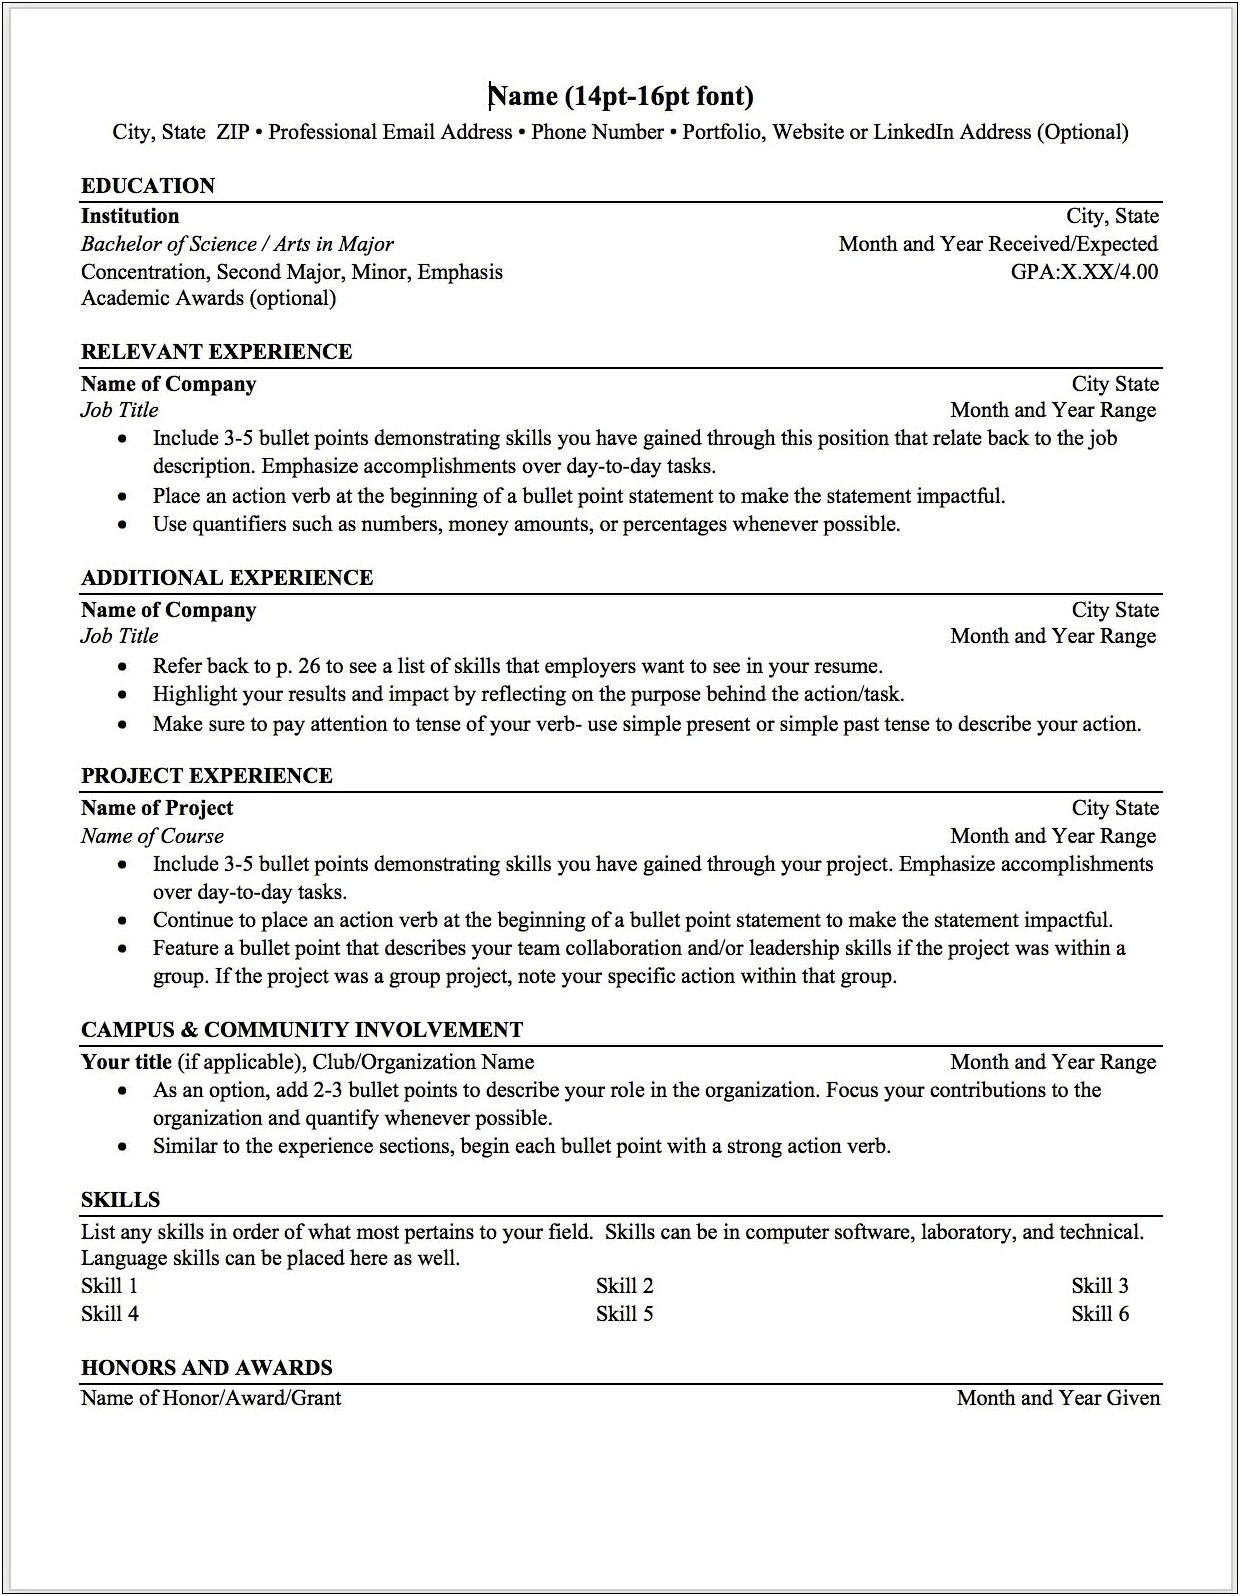 Resume List Education And Skills